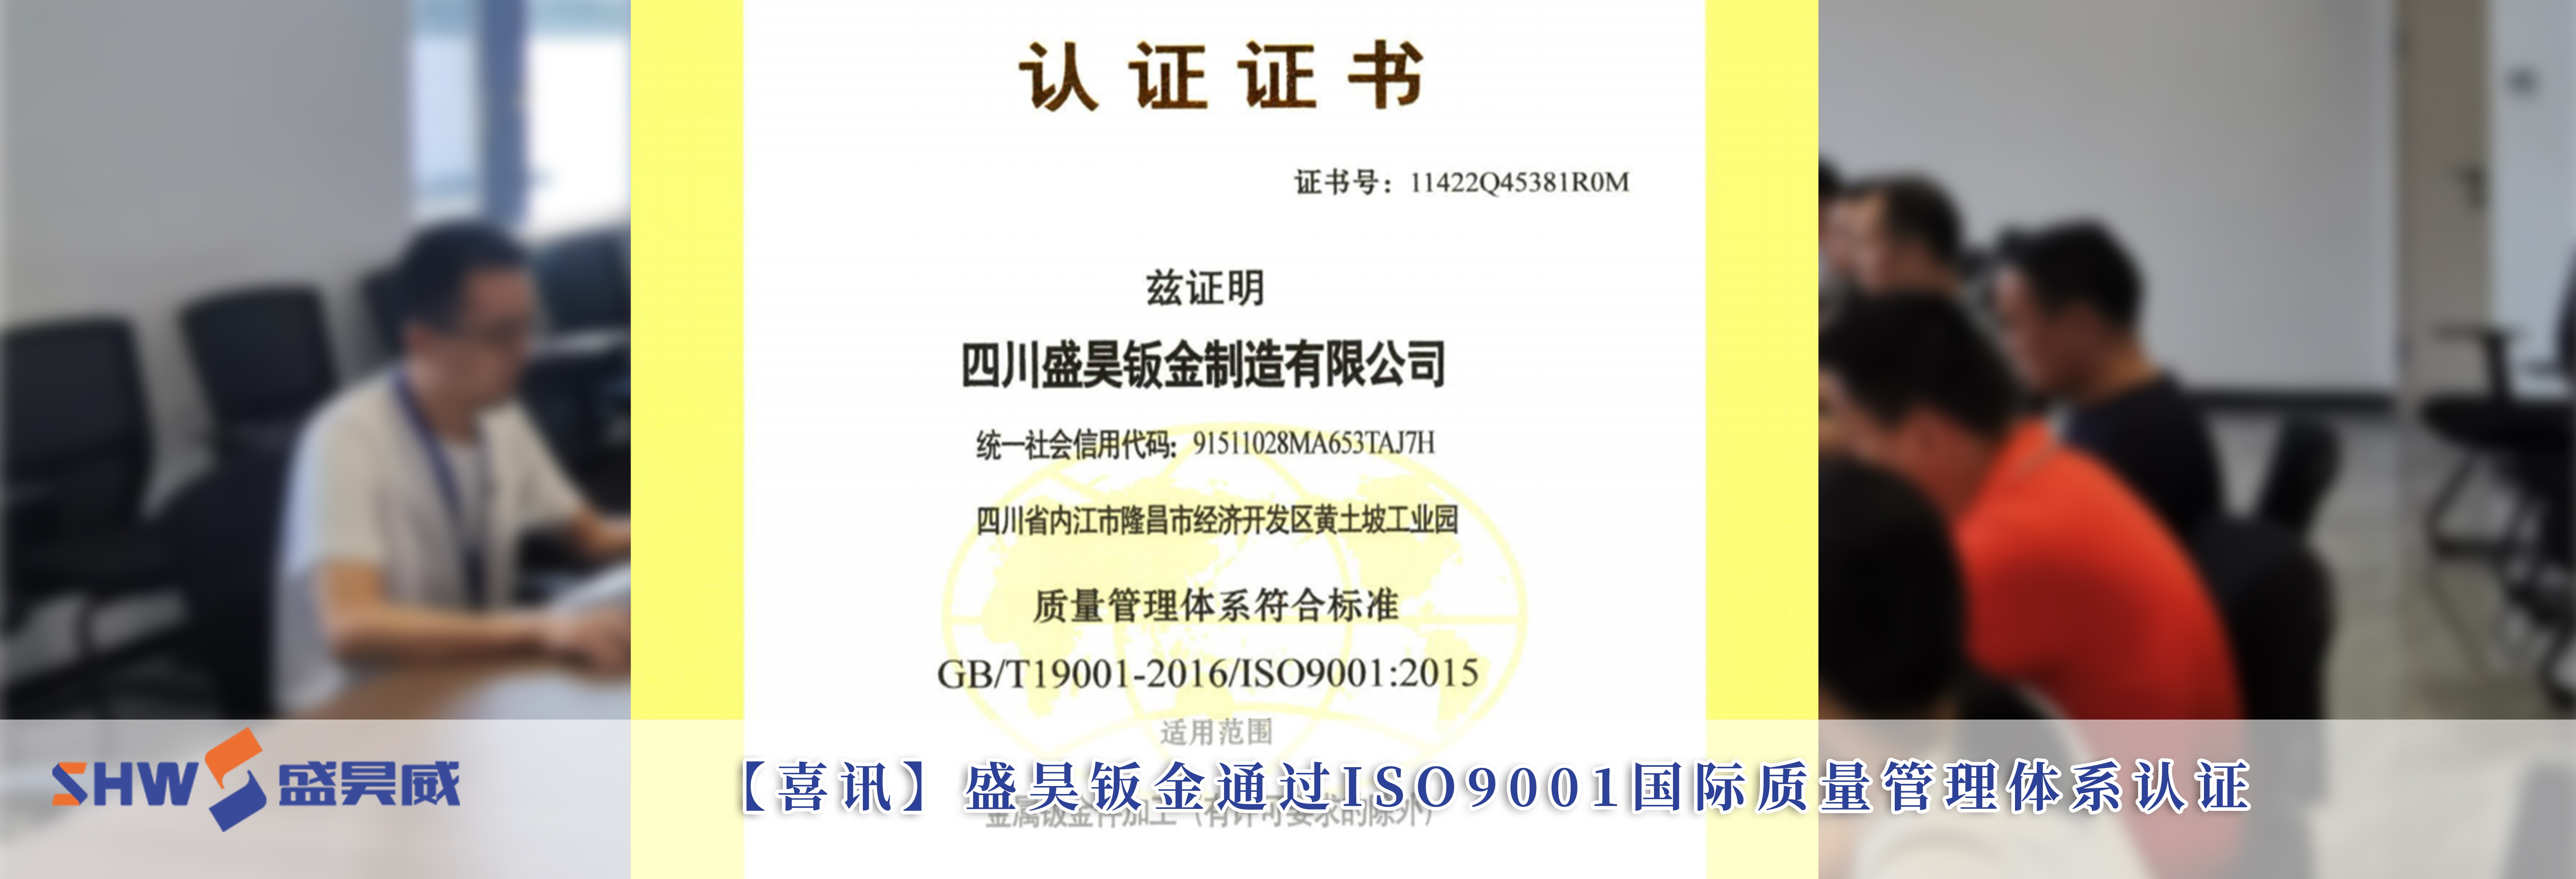 【喜讯】盛昊钣金通过ISO9001国际质量管理体系认证